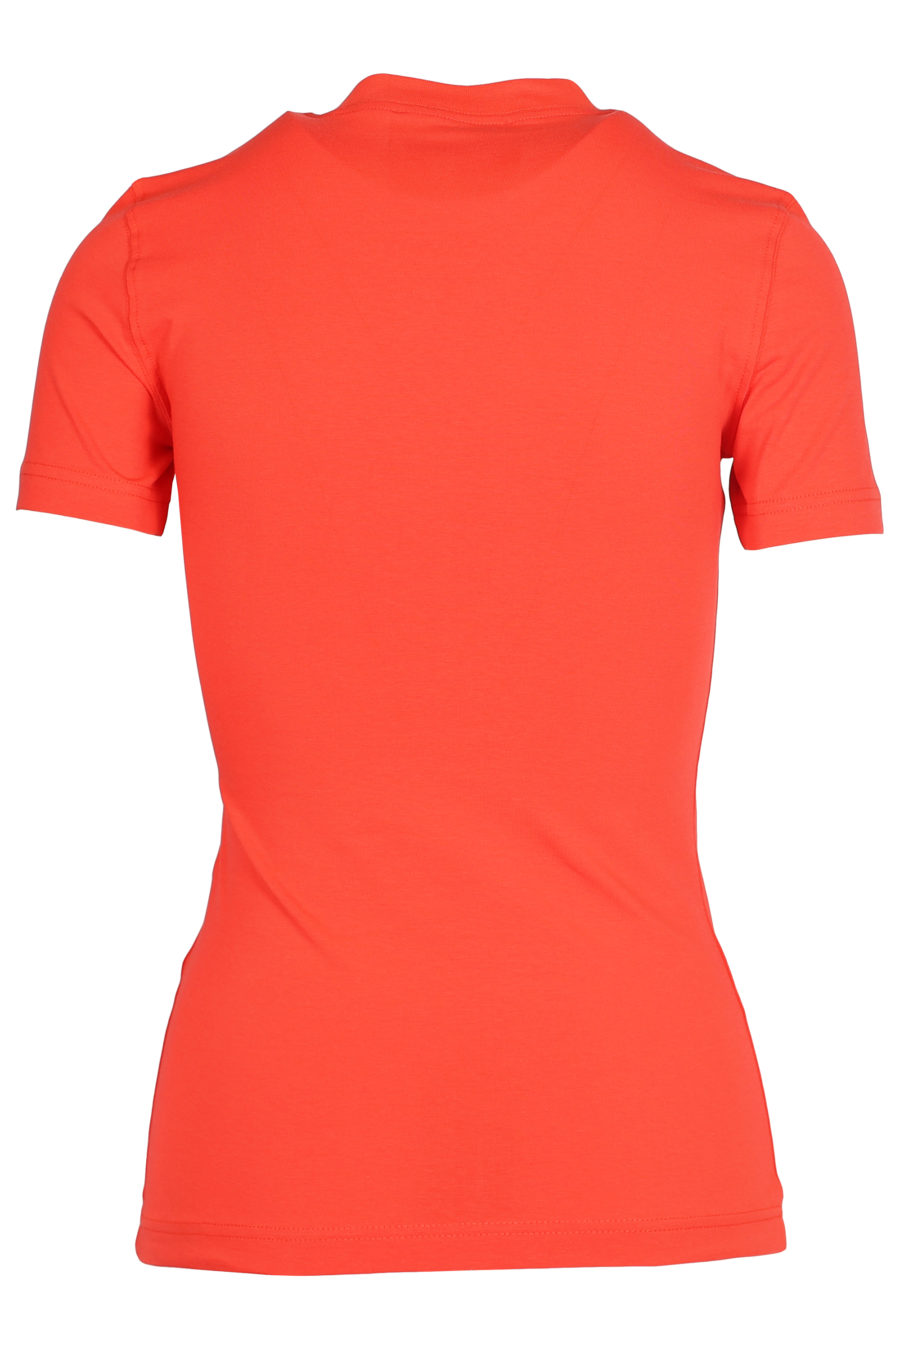 Camiseta color coral con logo plateado - IMG 5494